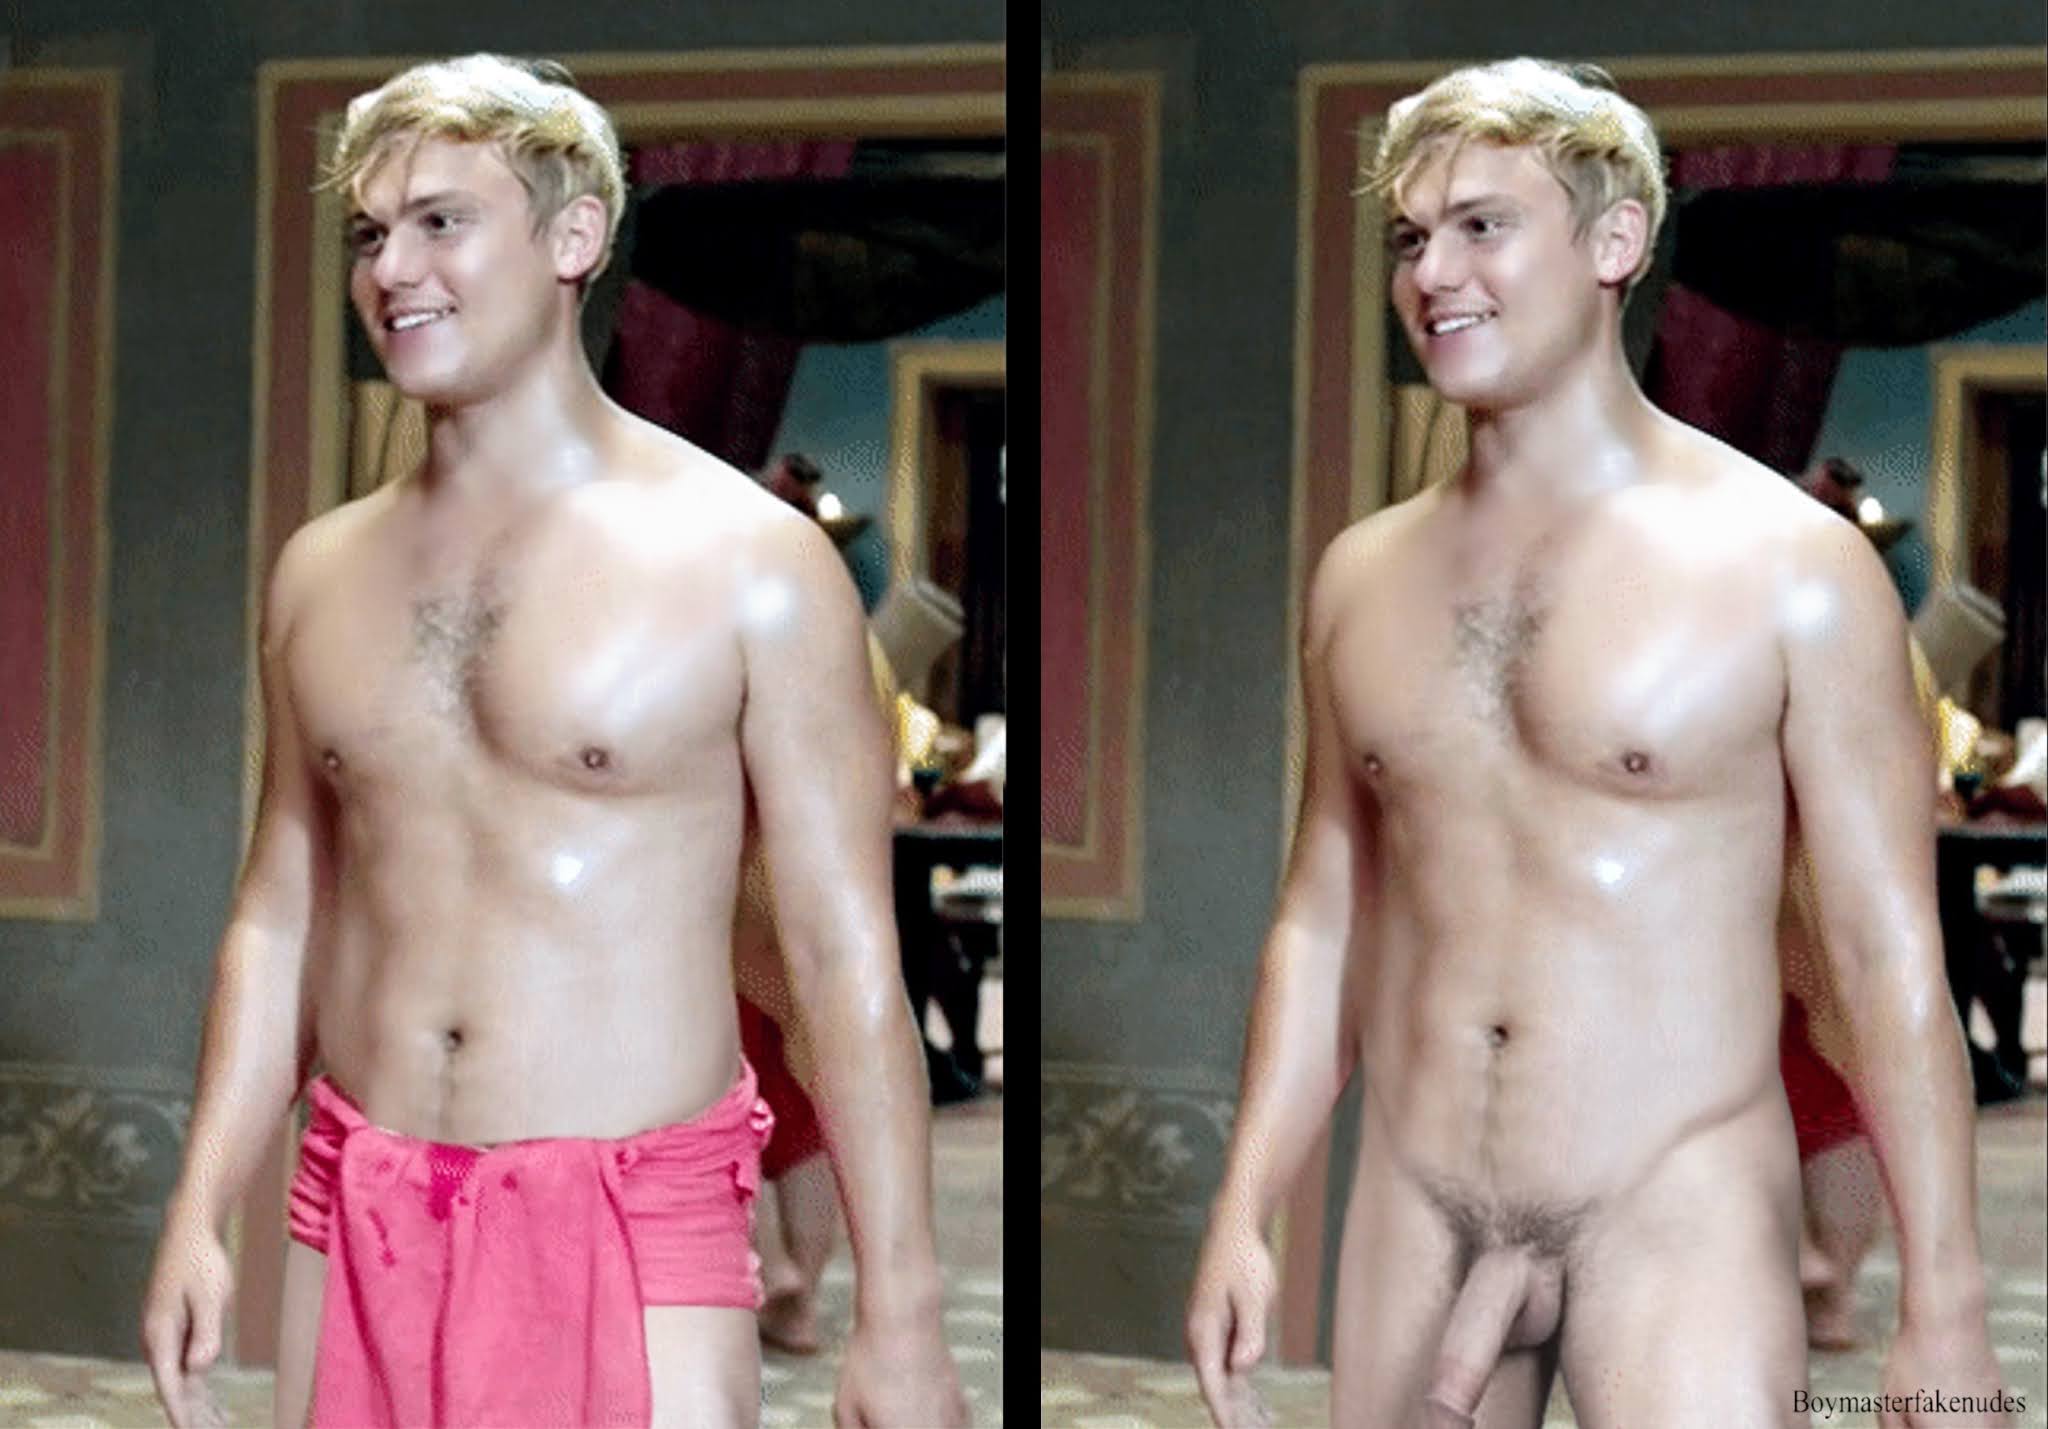 Boymaster Fake Nudes Uk Tv Series Plebs Actors Jon Pointing And Tom